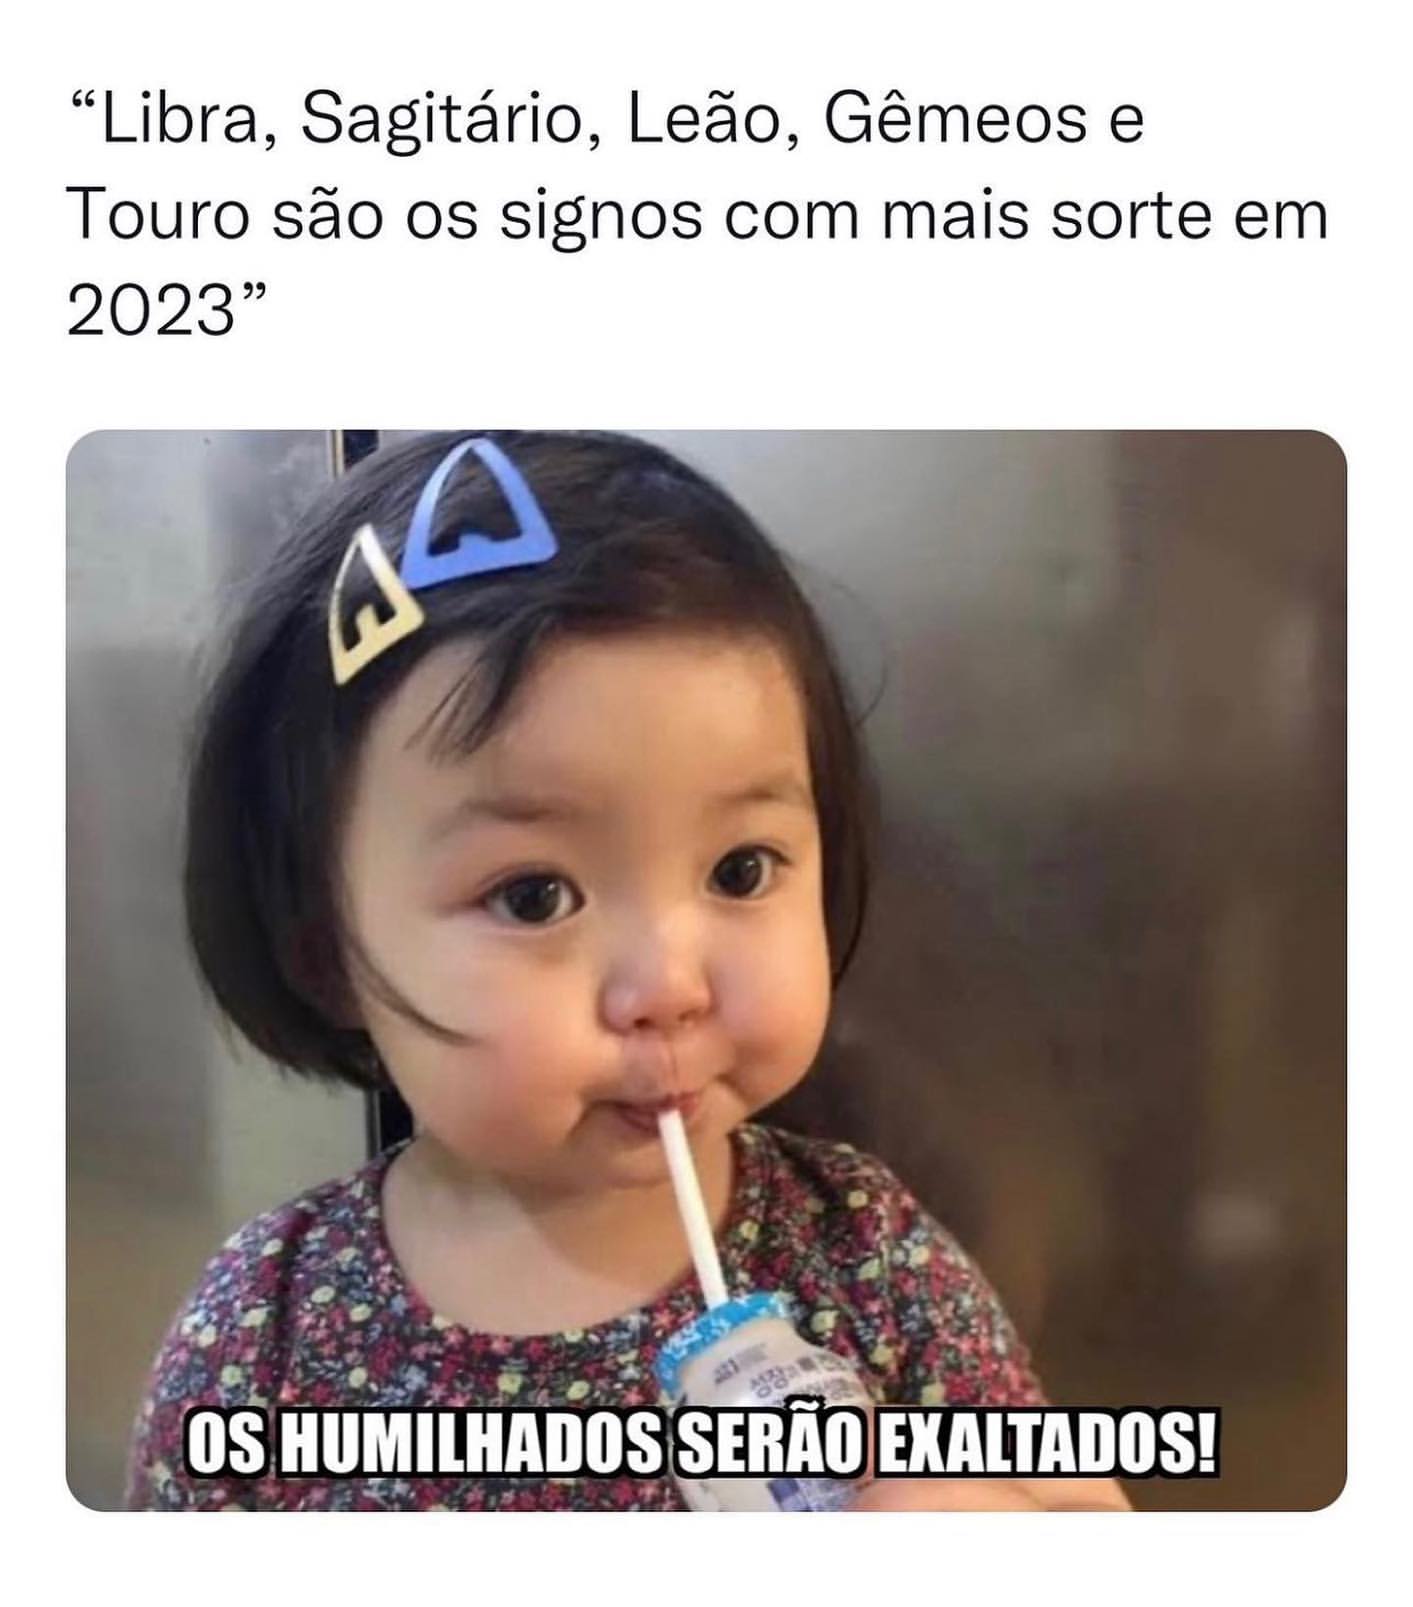 "Libra, Sagitário, Leão, Gêmeos e Touro são os signos com mais sorte em 2023".  Os humilhados serão exaltados.